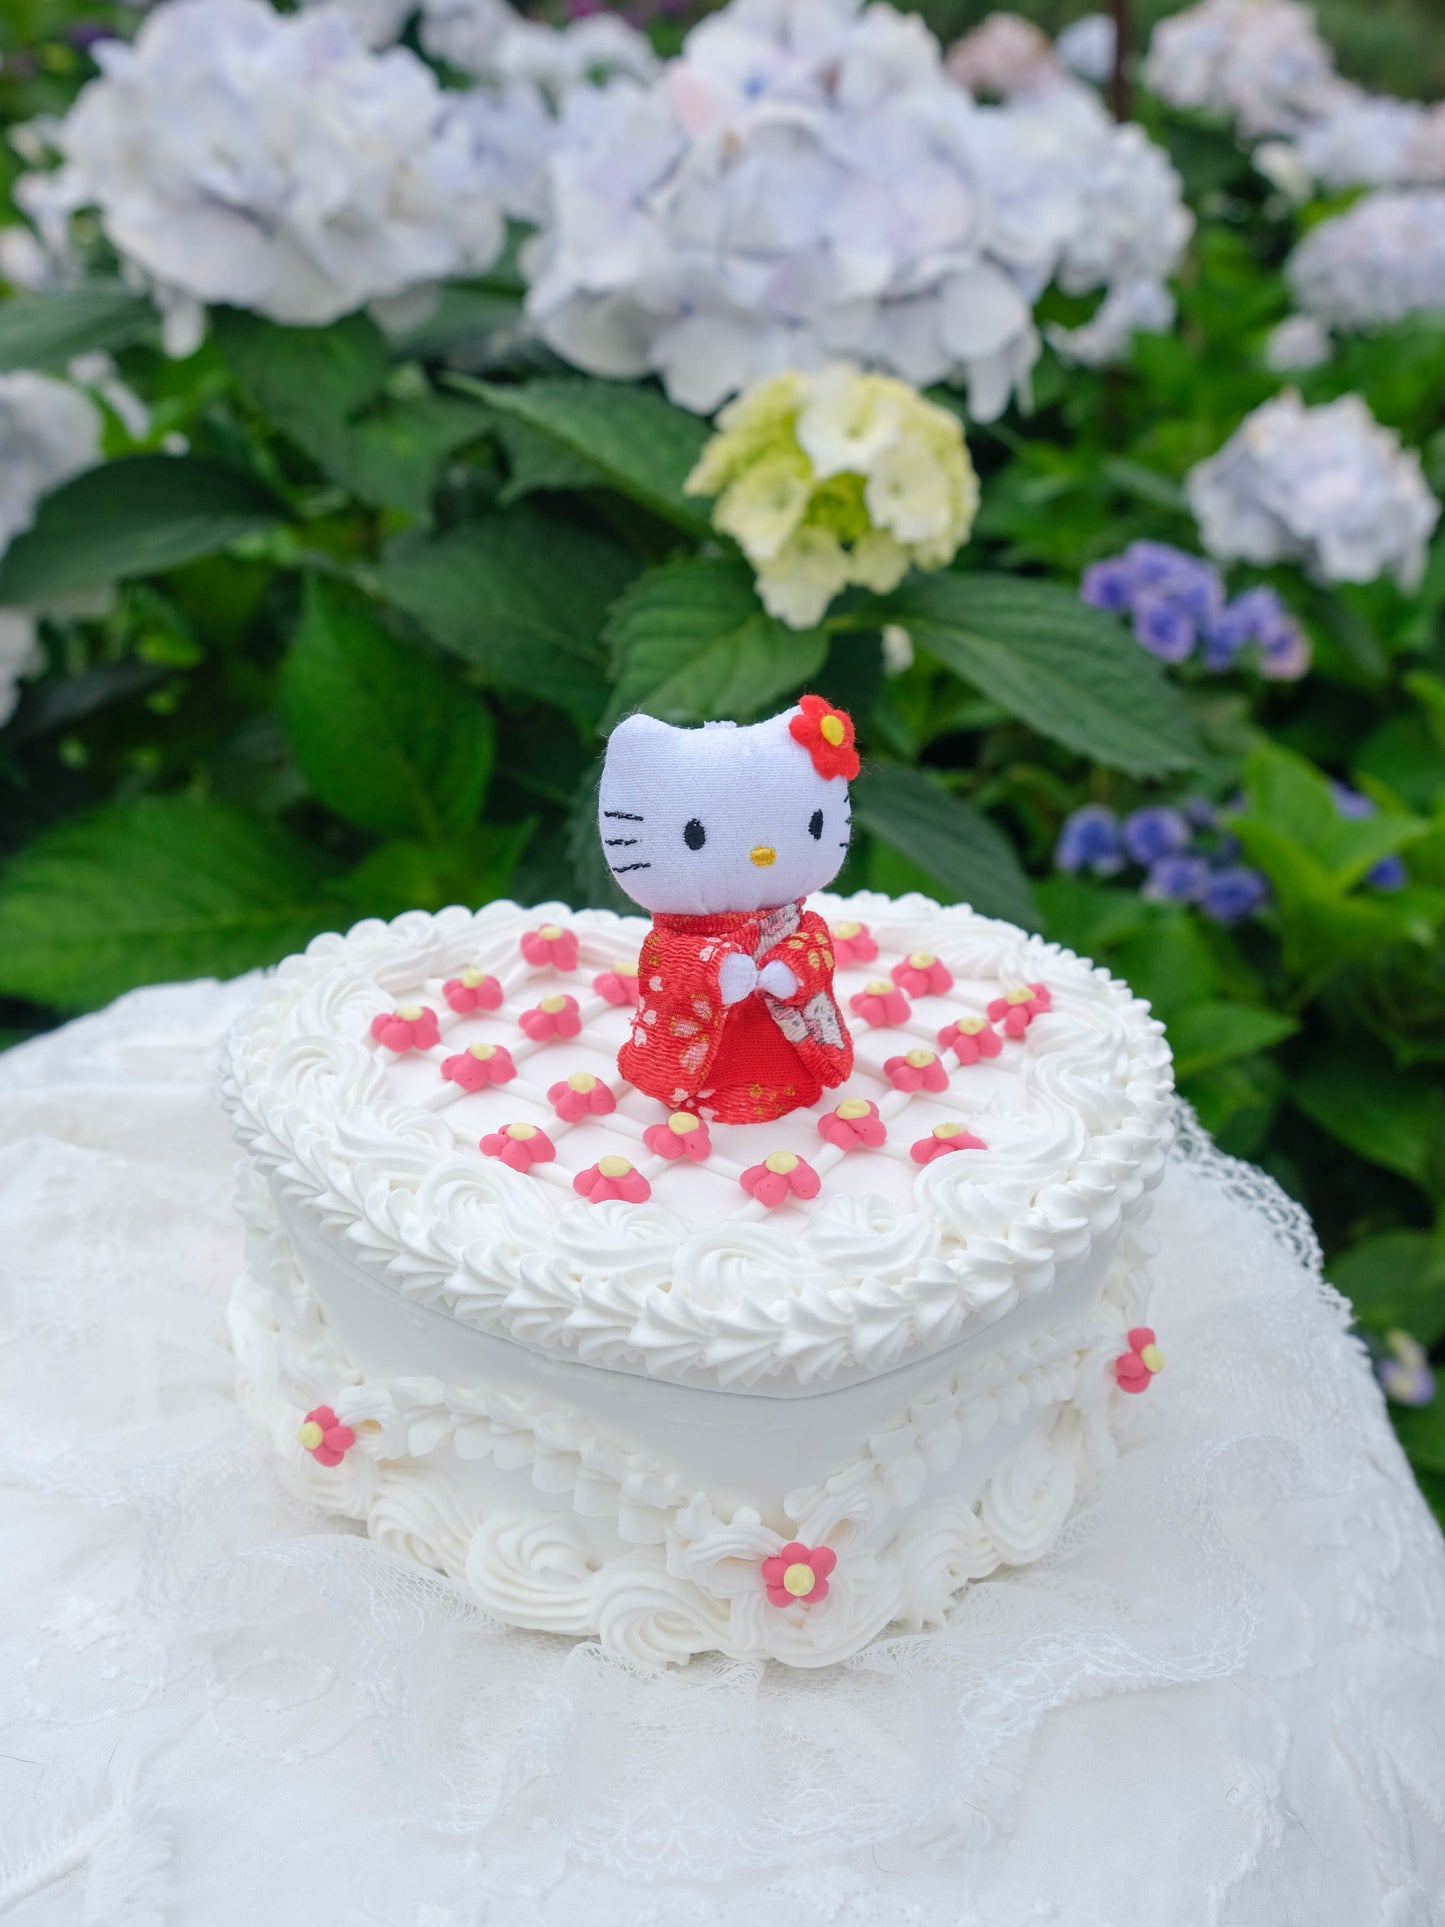 Hello Kitty Red Kimono - Plushie